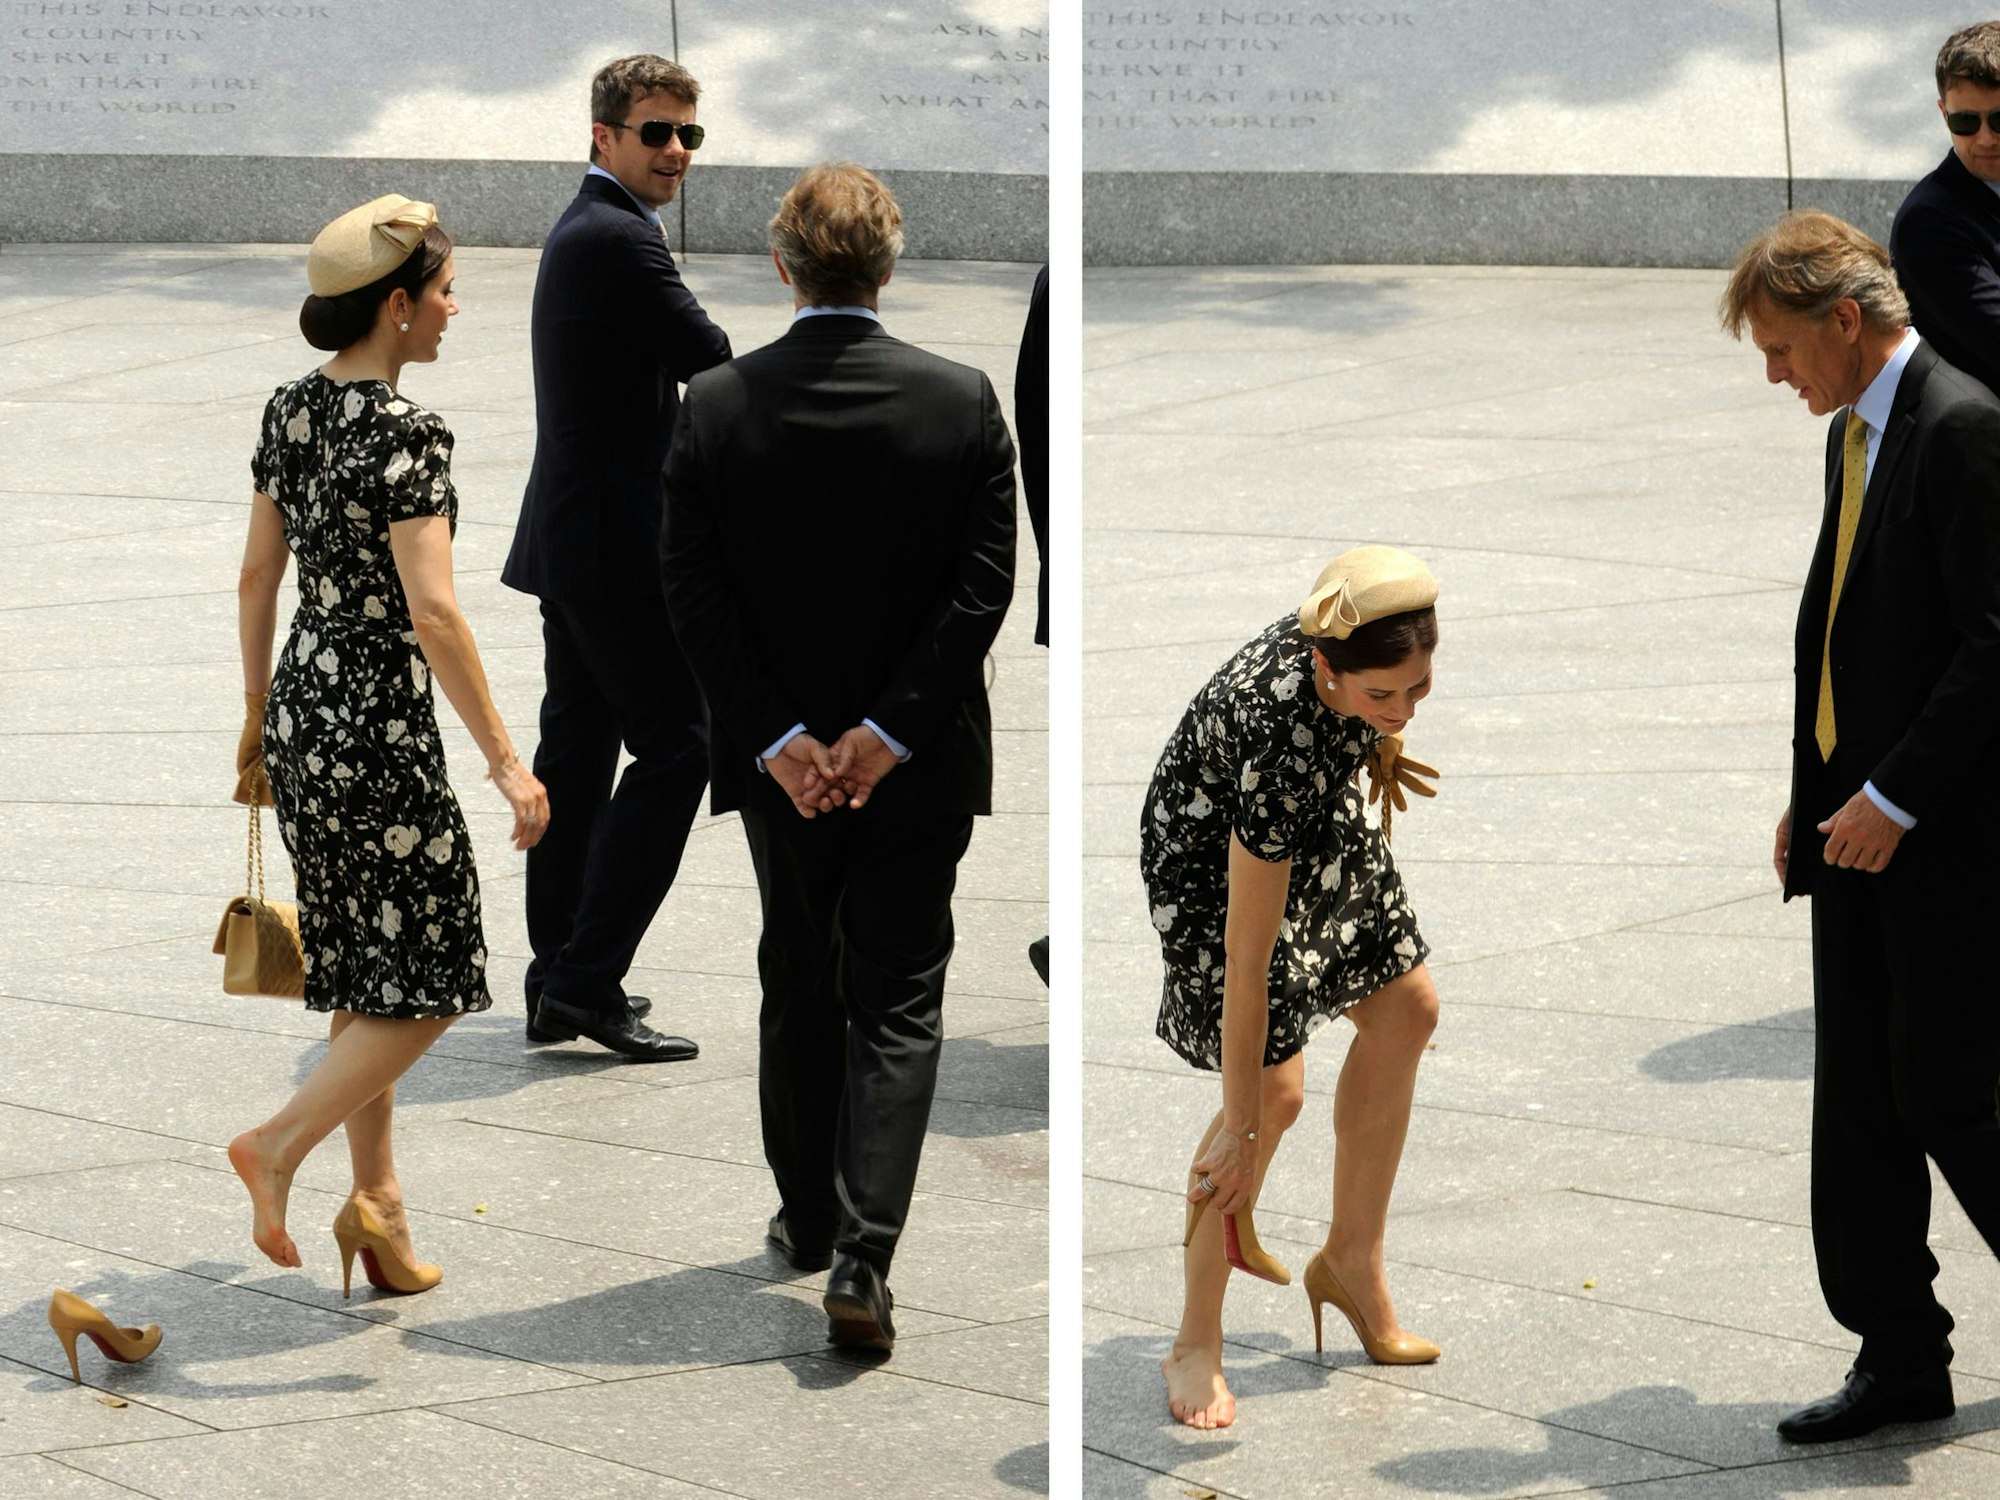 Dänemarks Kronprinzessin Mary war im Juni 2010 mit Ehemann Frederick zu Besuch in den USA. Auf dem Arlington National Friedhof blieb sie mit einem Absatz ihrer High Heels im Fundament stecken.